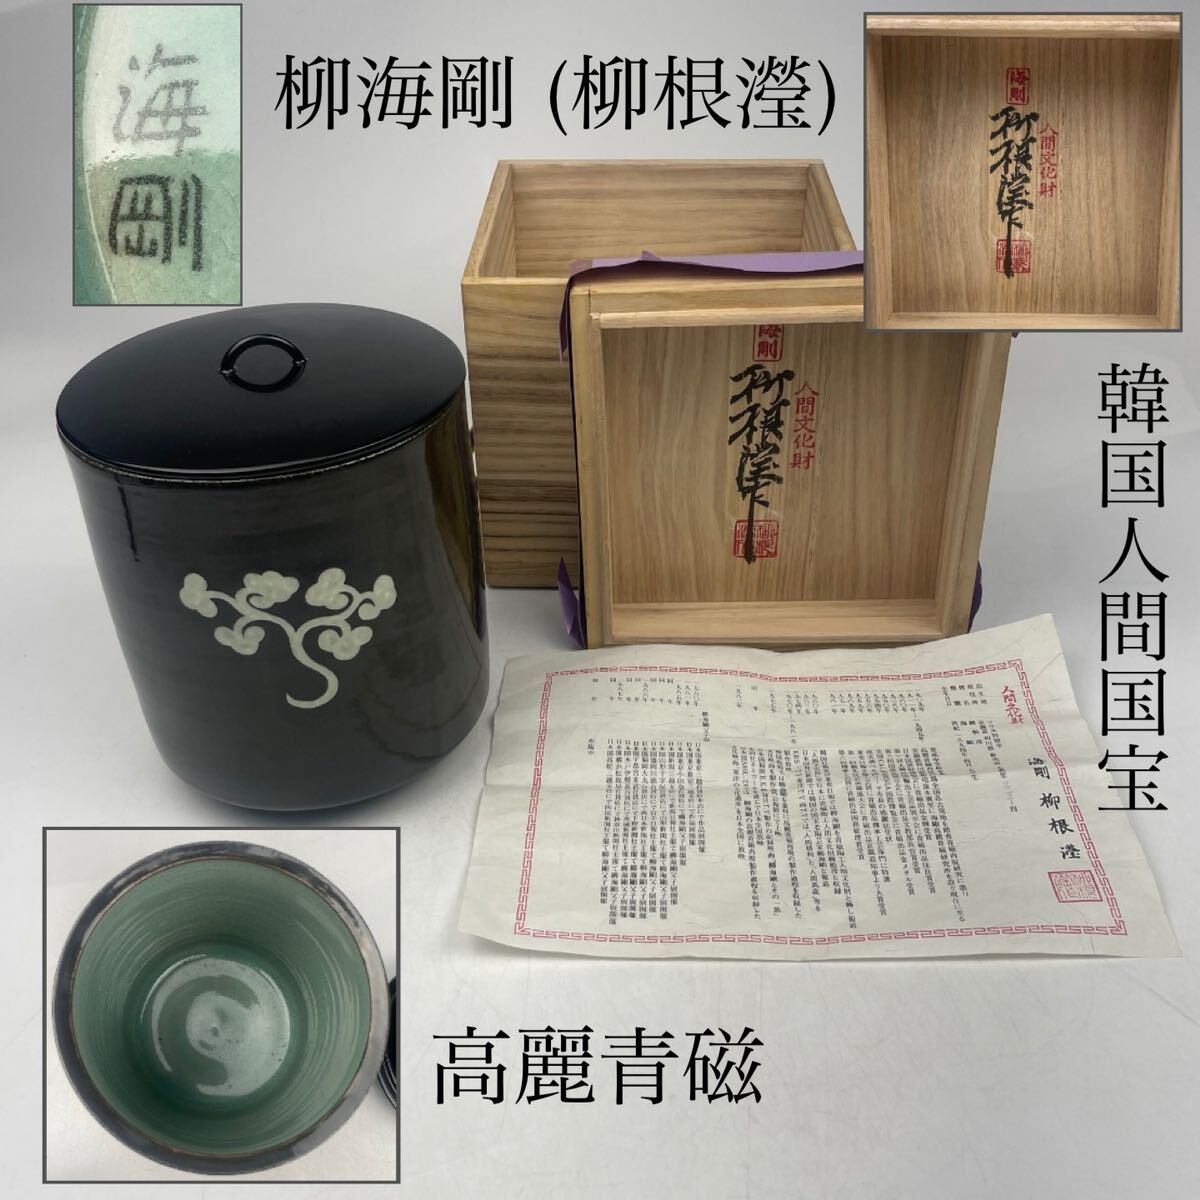 . море Gou (. корень .) Goryeo селадон белый .. сосуд для воды для чайной церемонии вместе коробка *. есть / Корея человек национальное достояние искусный мастер чайная посуда . чайная посуда зеленый чай орнамент.1837